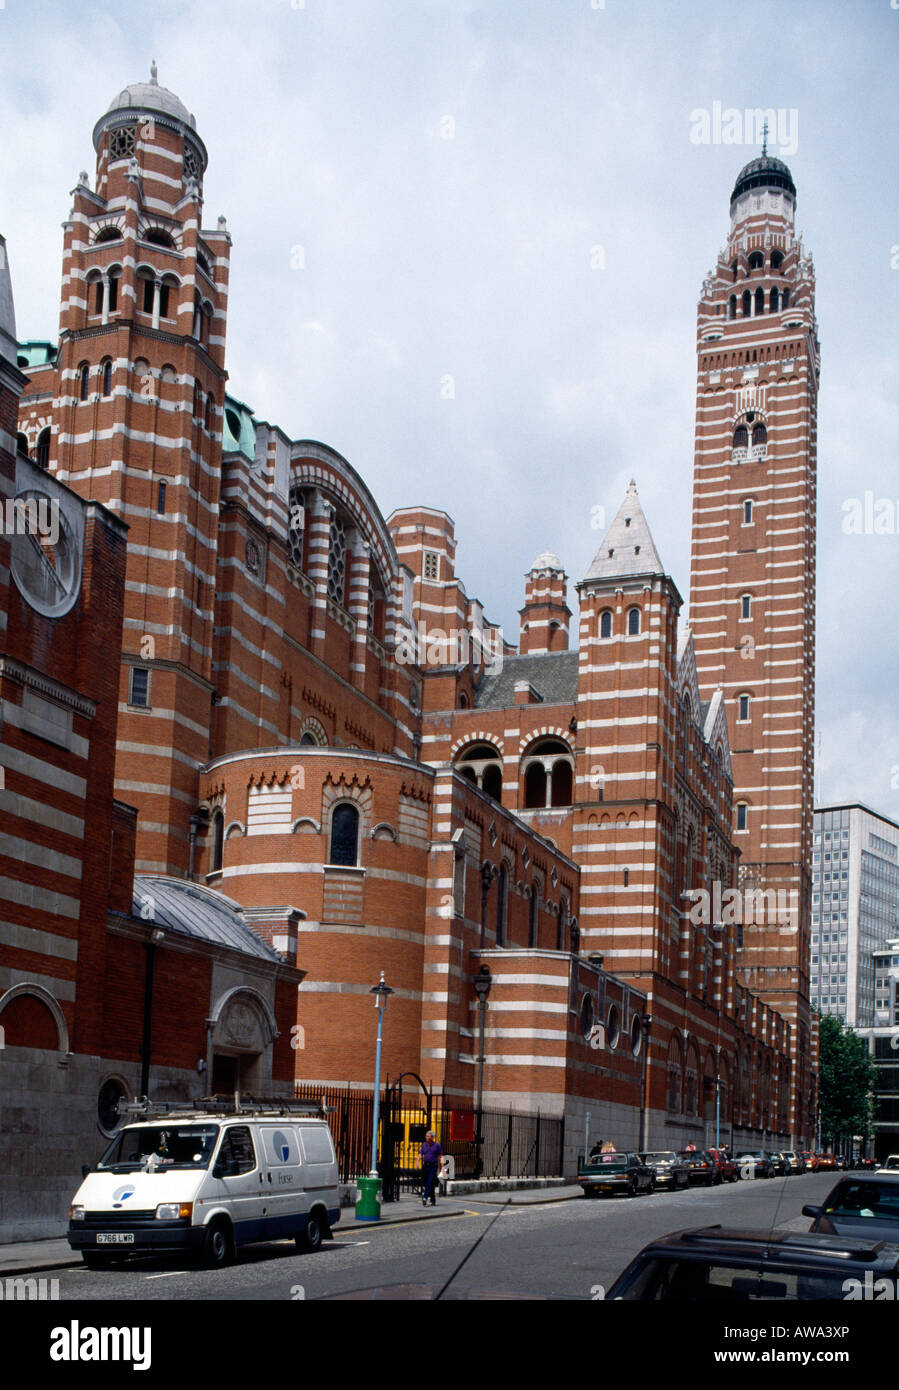 La Cathédrale de Westminster, Londres (1895-1903). Architecte : Sir John Francis Bentley Banque D'Images